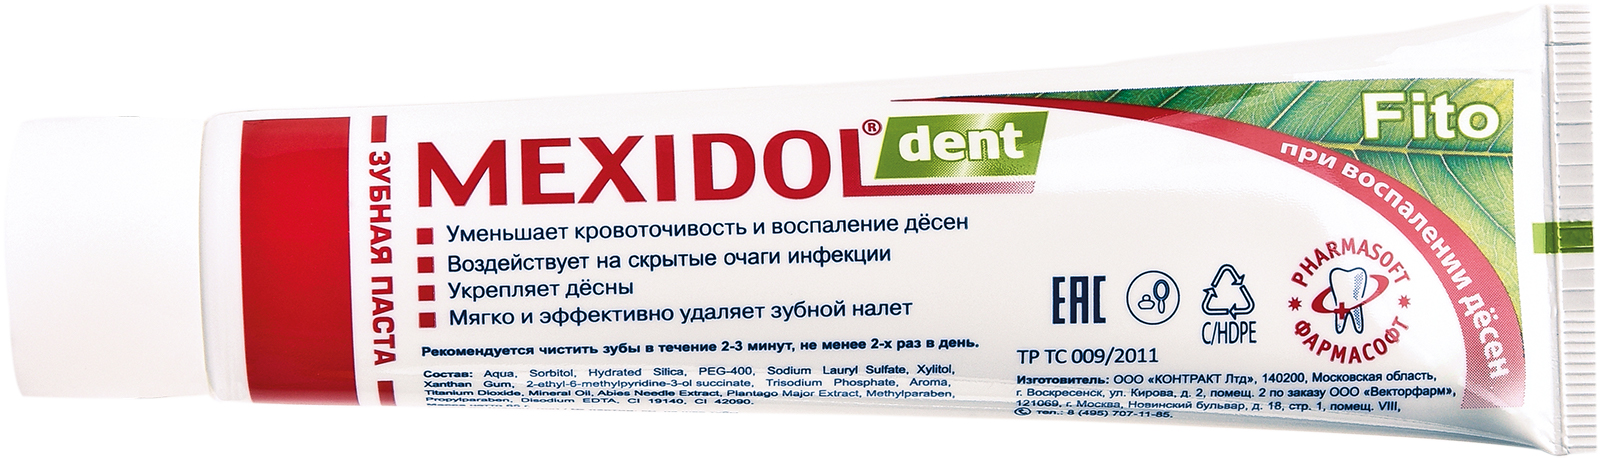 Мексидол Дент Фито, зубная паста, 100 г r o c s зубная паста фруктовый рожок без фтора 45 гр